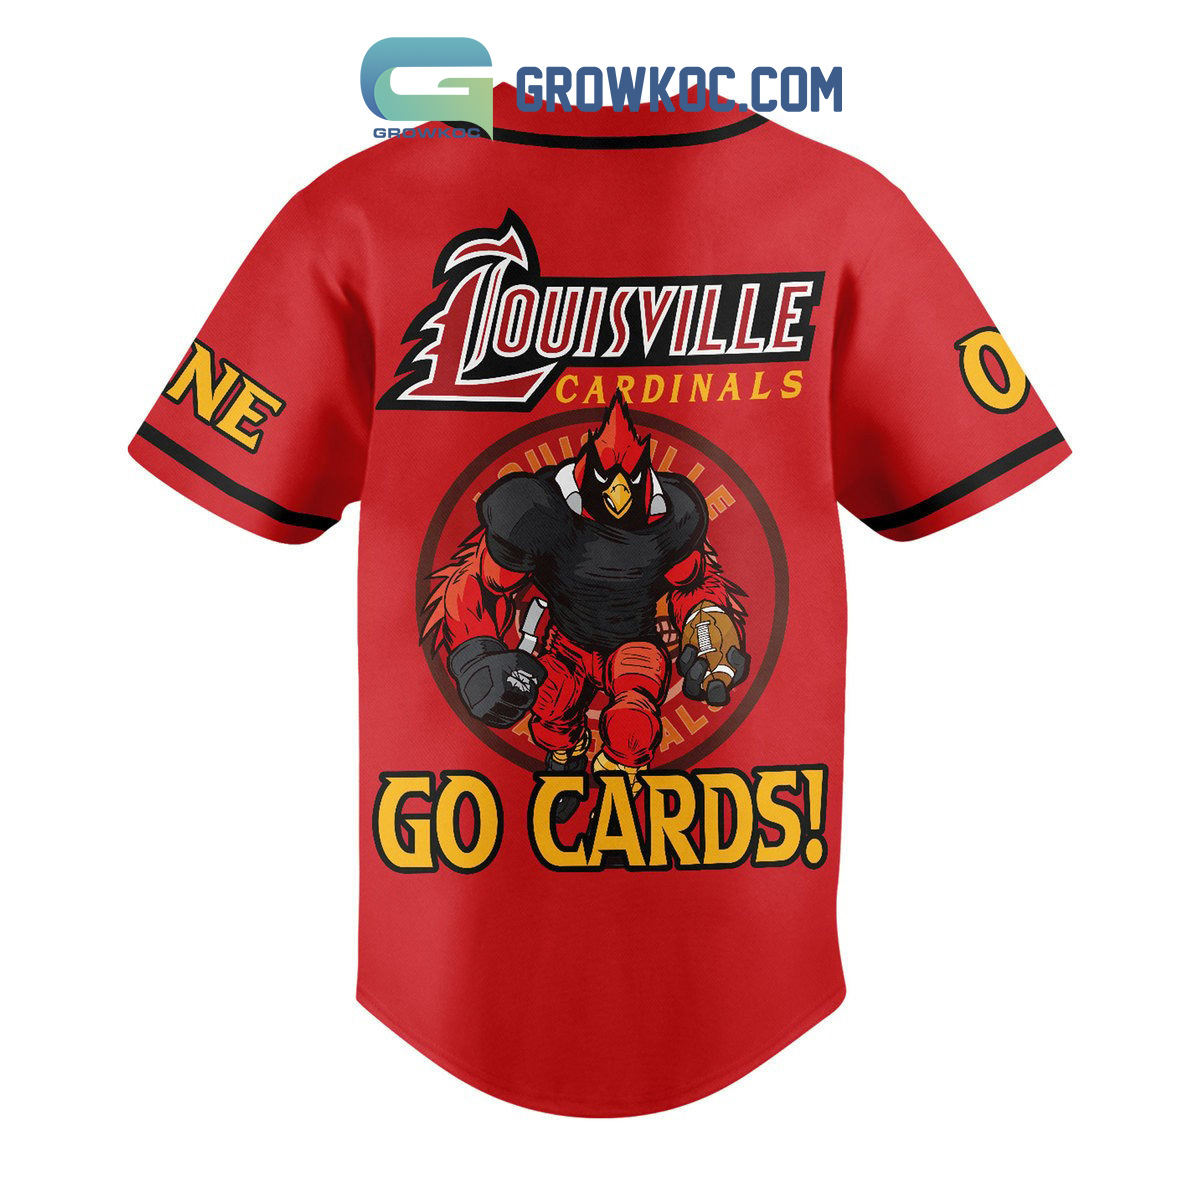 louisville cardinals baseball jerseys